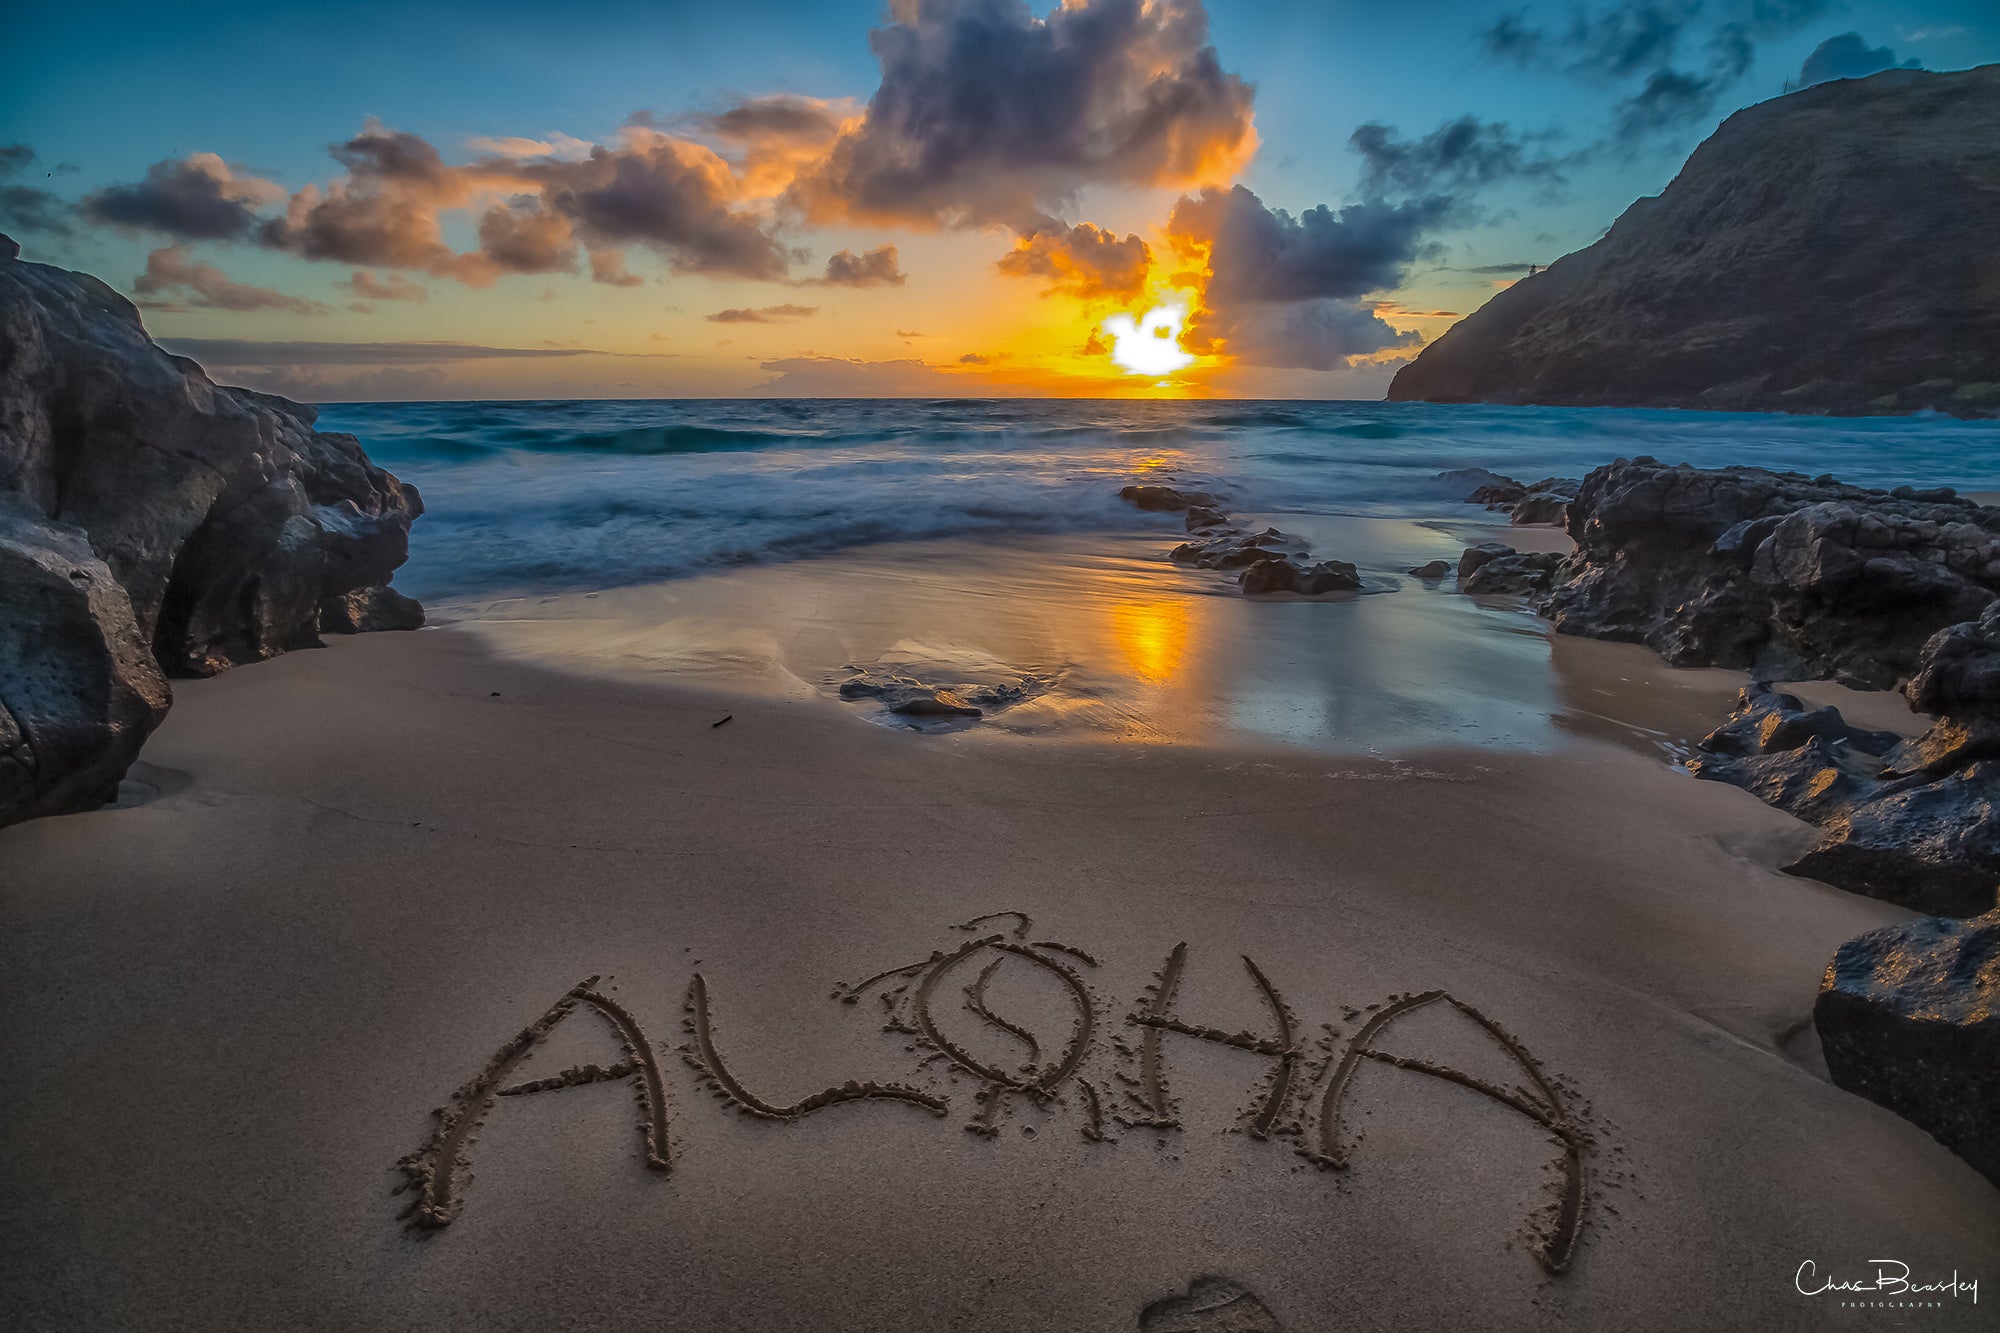 Aloha Makapu'u